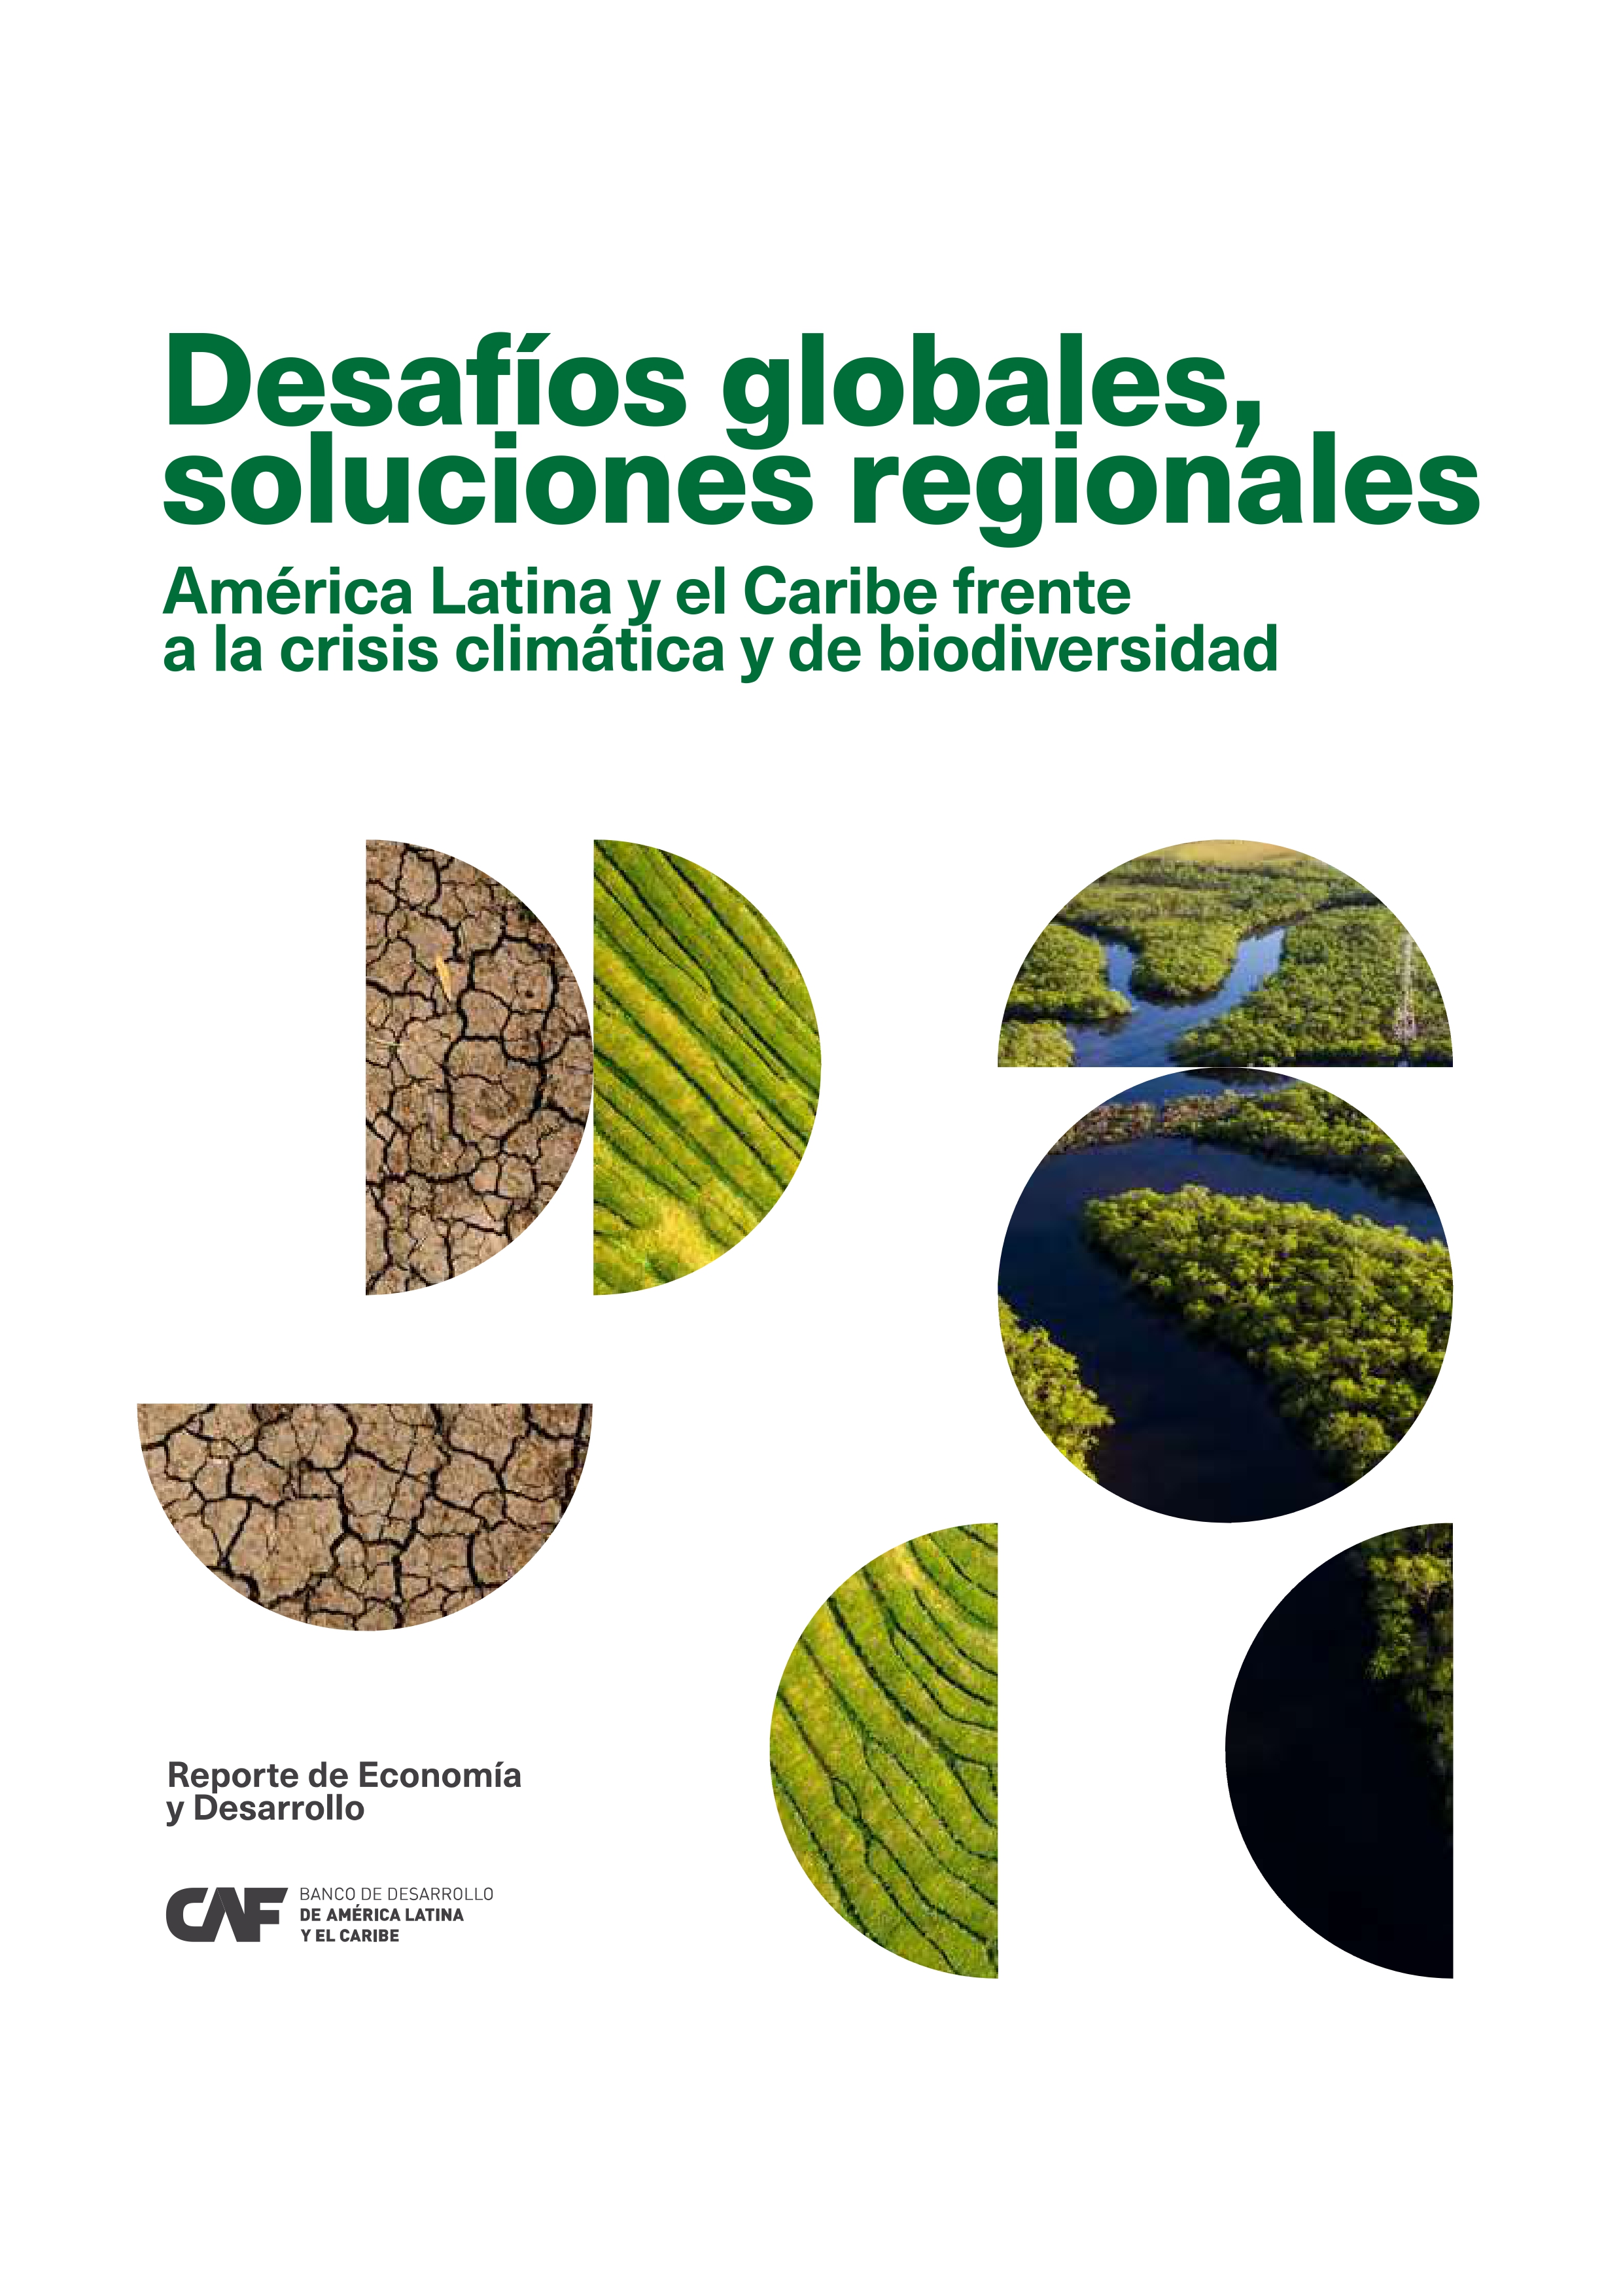 Desafíos globales, soluciones regionales. ALC frente a la crisis climática y de biodiversidad. CAF, 2023